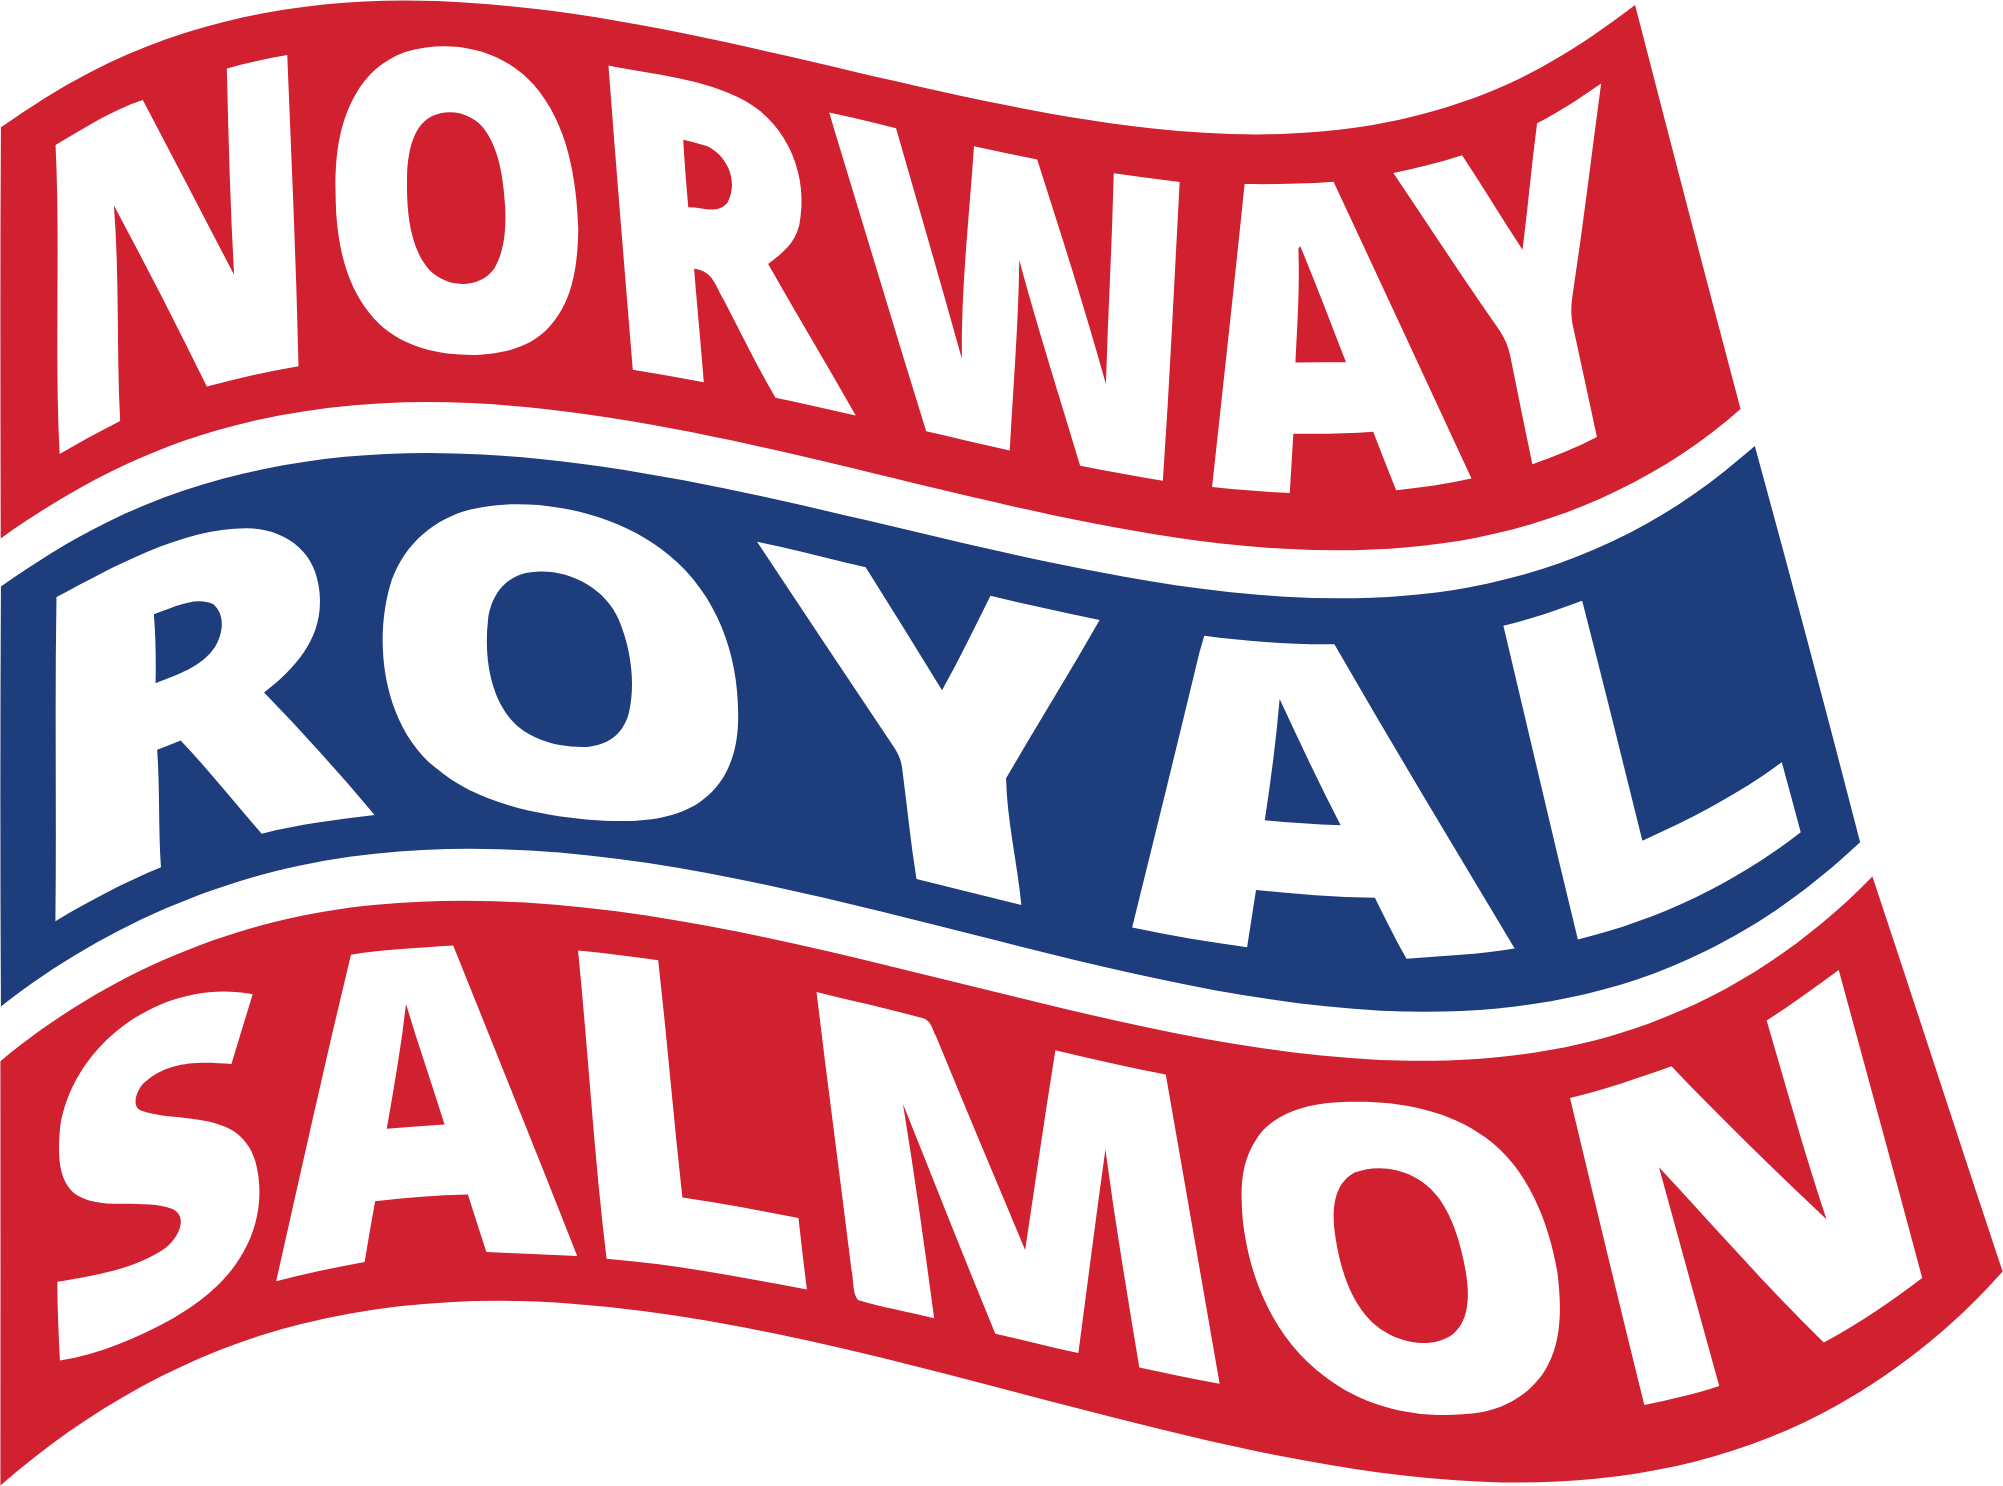 Norway Royal Salmon
 logo (PNG transparent)